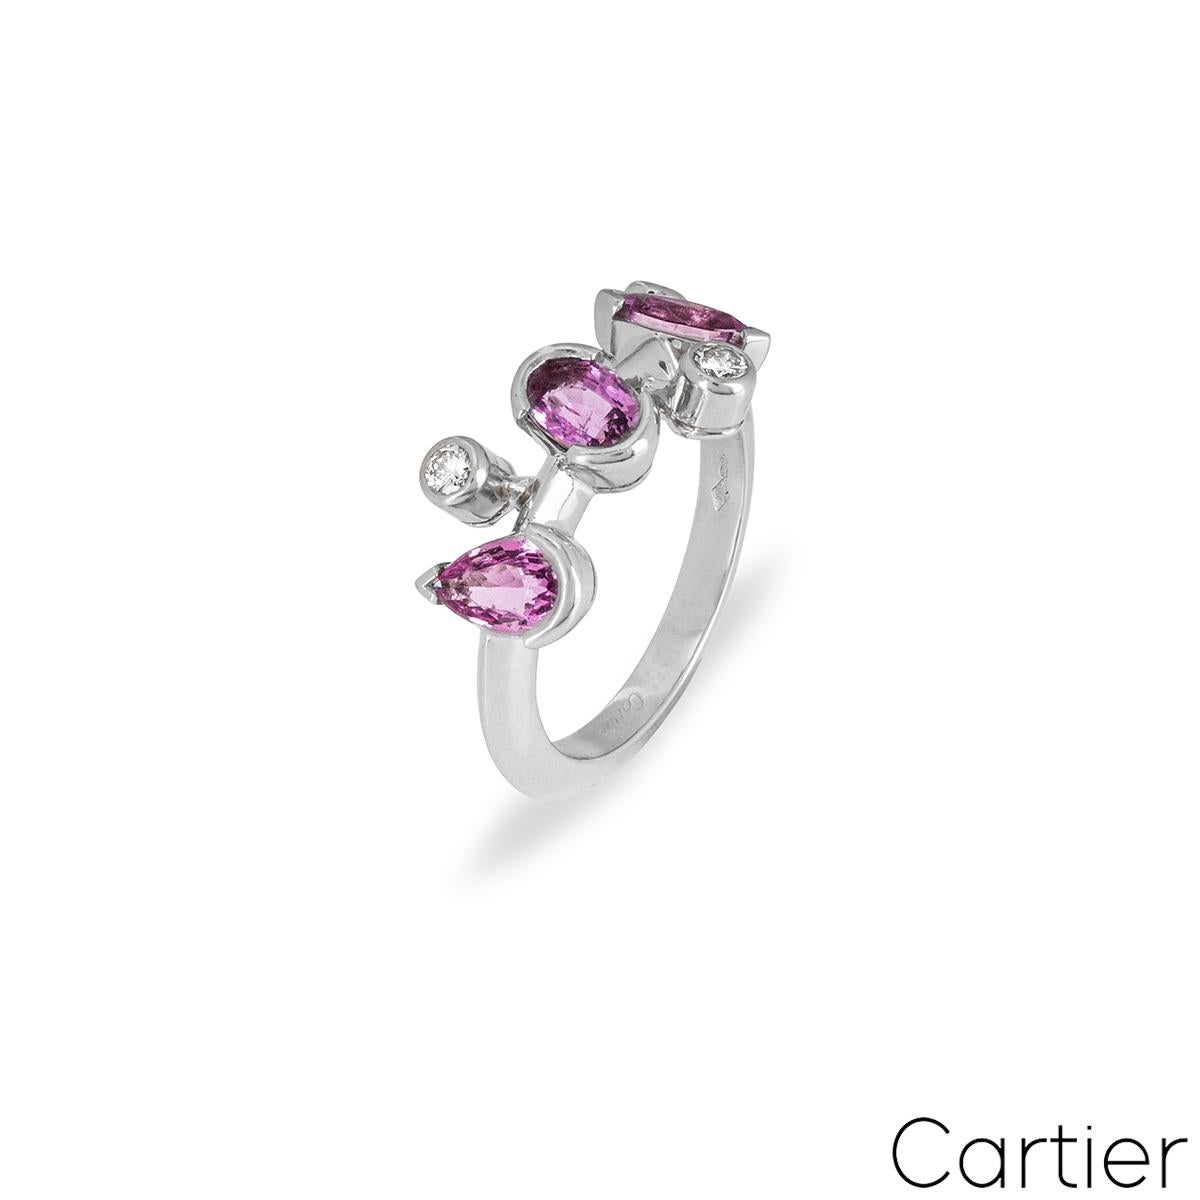 Une jolie bague Cartier en saphir rose et diamant en platine de la collection Méli Mélo. La bague est ornée d'une sélection de saphirs roses de taille marquise, ovale et poire, pour un total d'environ 1,30 ct, et de 3 diamants ronds de taille